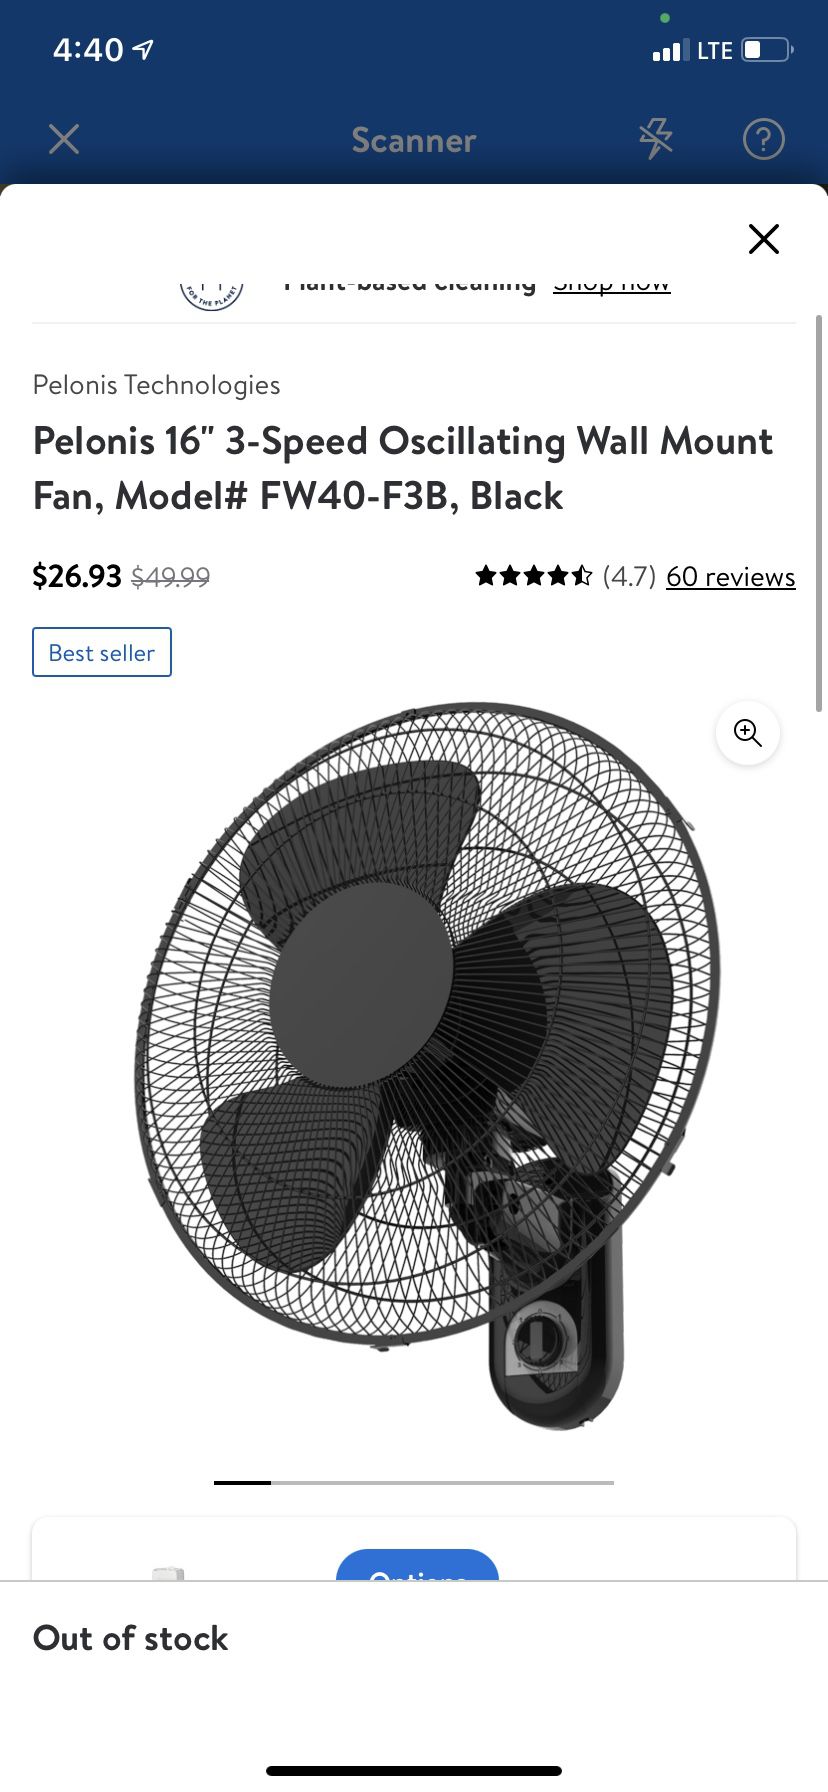 Pelonis 16” 3-speed Oscillating Wall Mount Fan